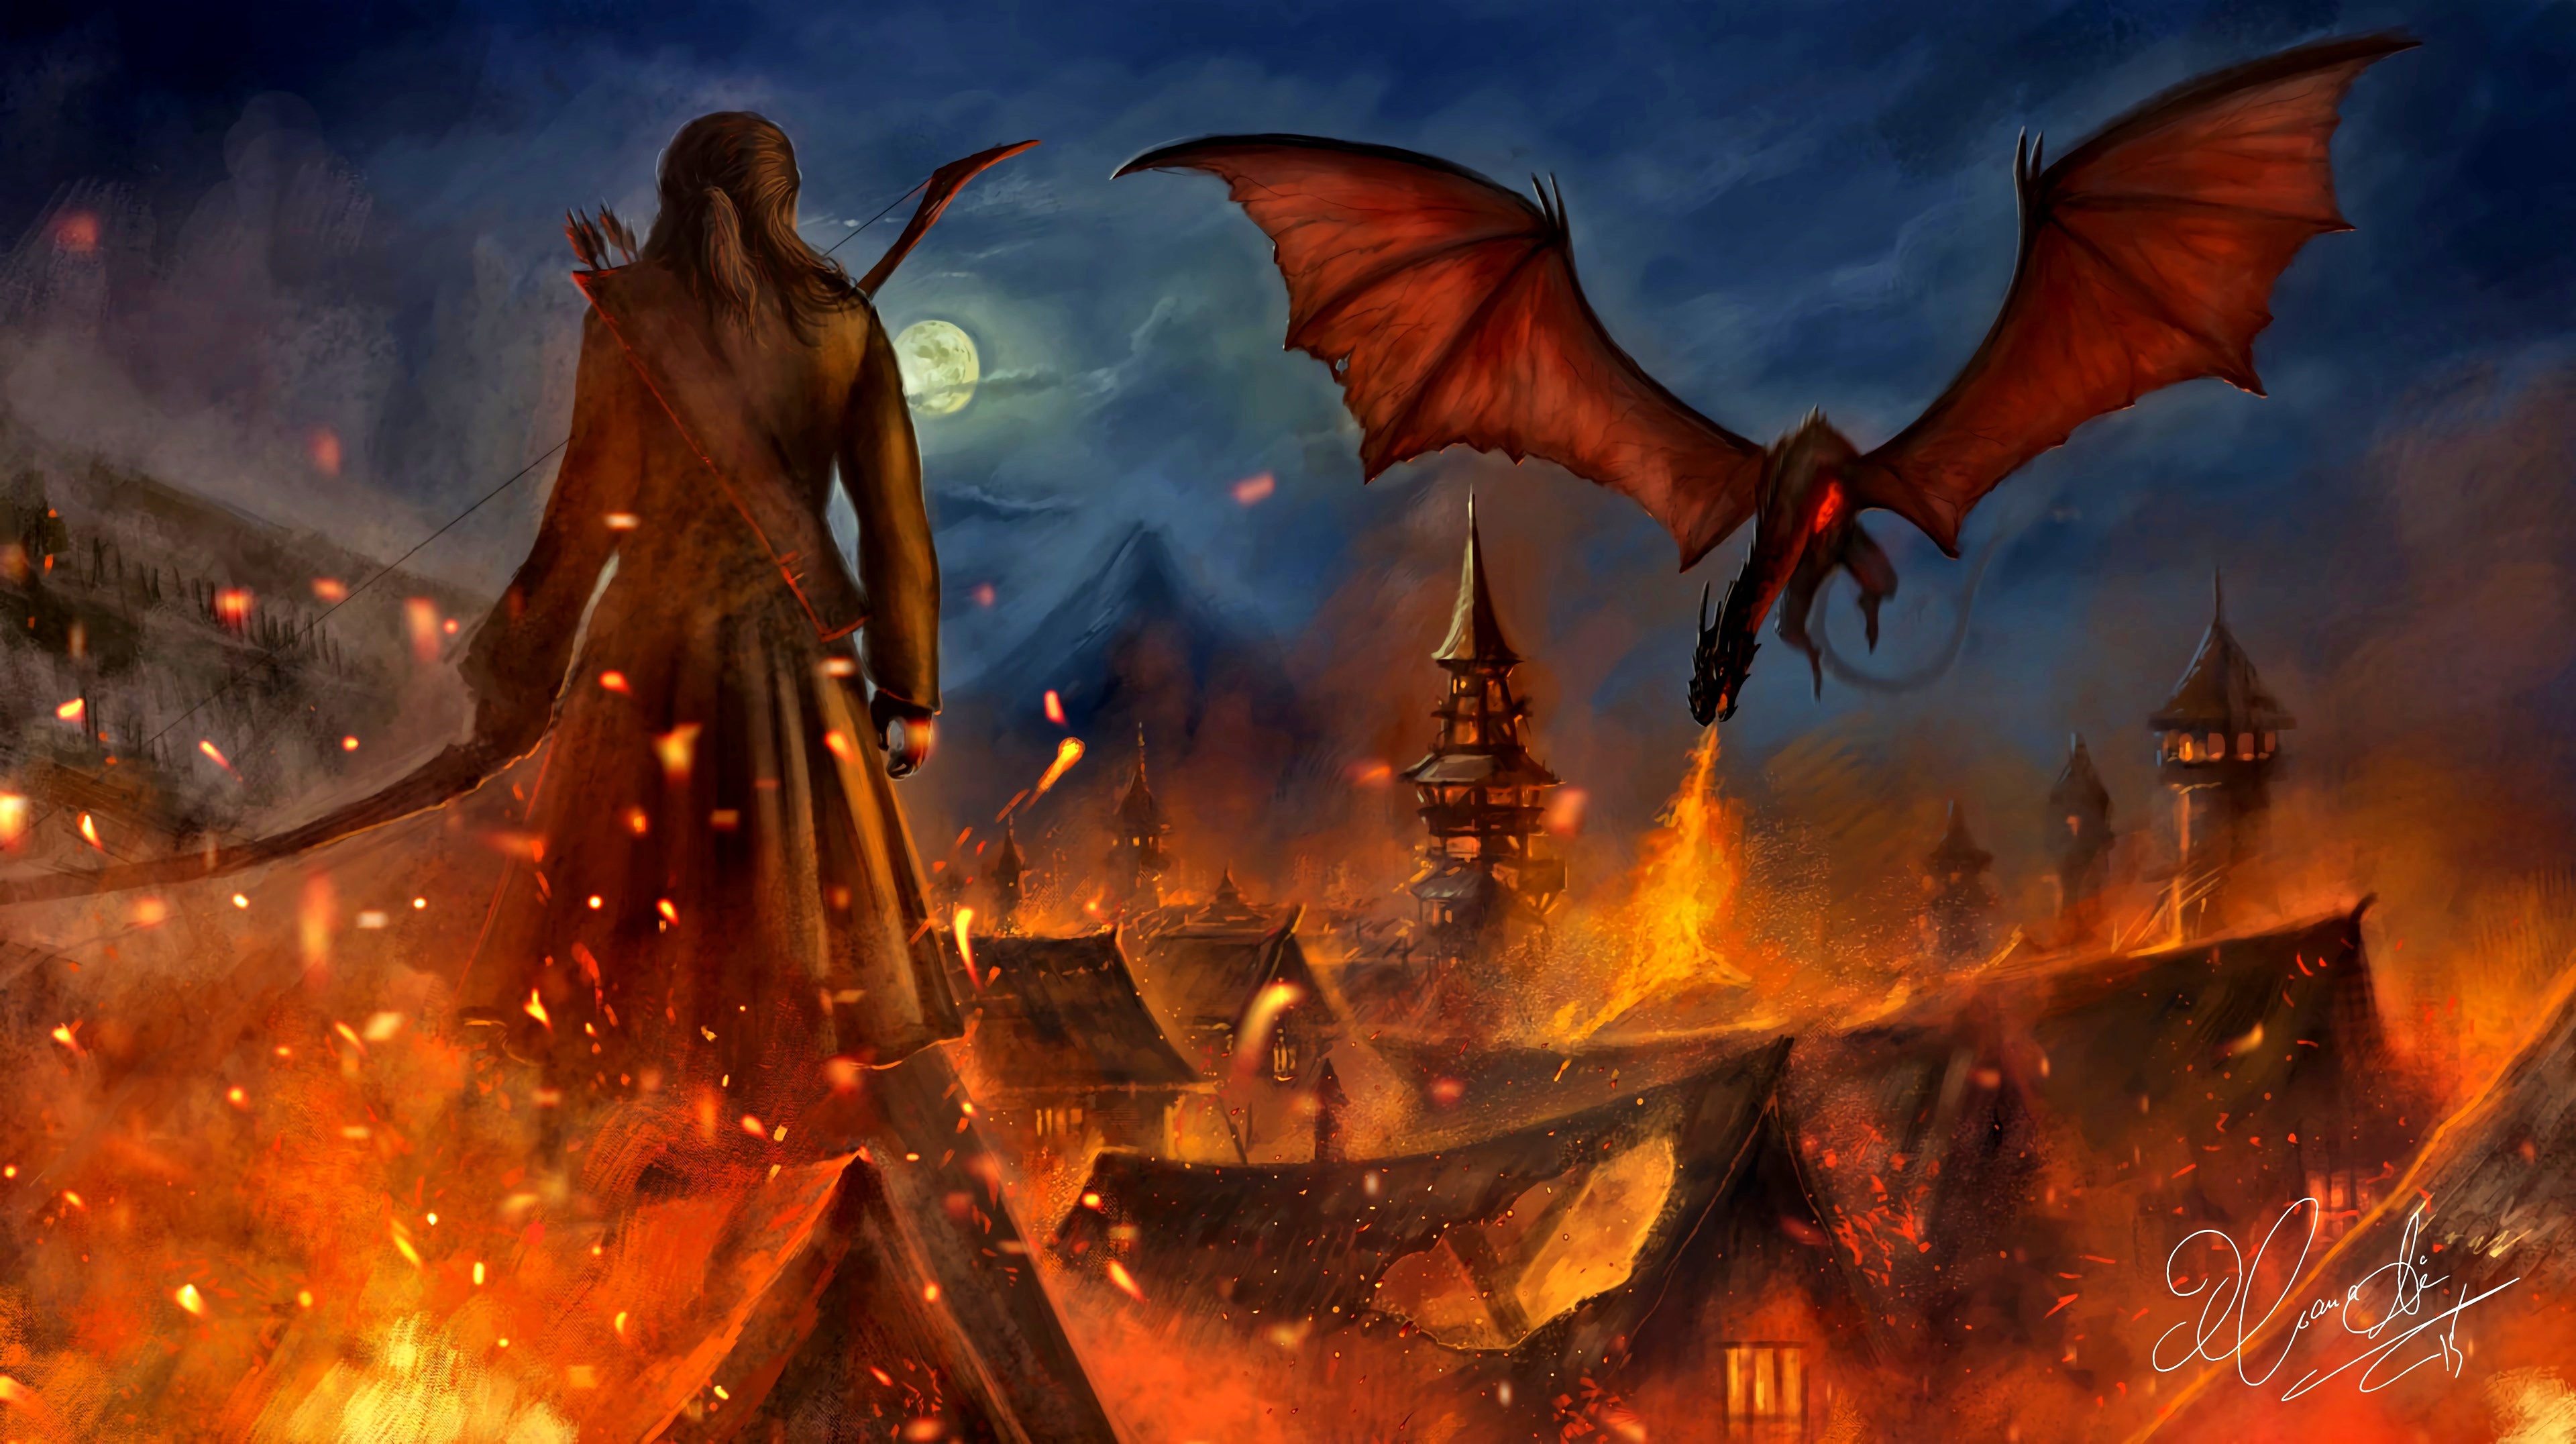 Descarga gratuita de fondo de pantalla para móvil de Fuego, El Señor De Los Anillos, Dragón, Arquero, Películas, El Hobbit: La Batalla De Los Cinco Ejércitos.